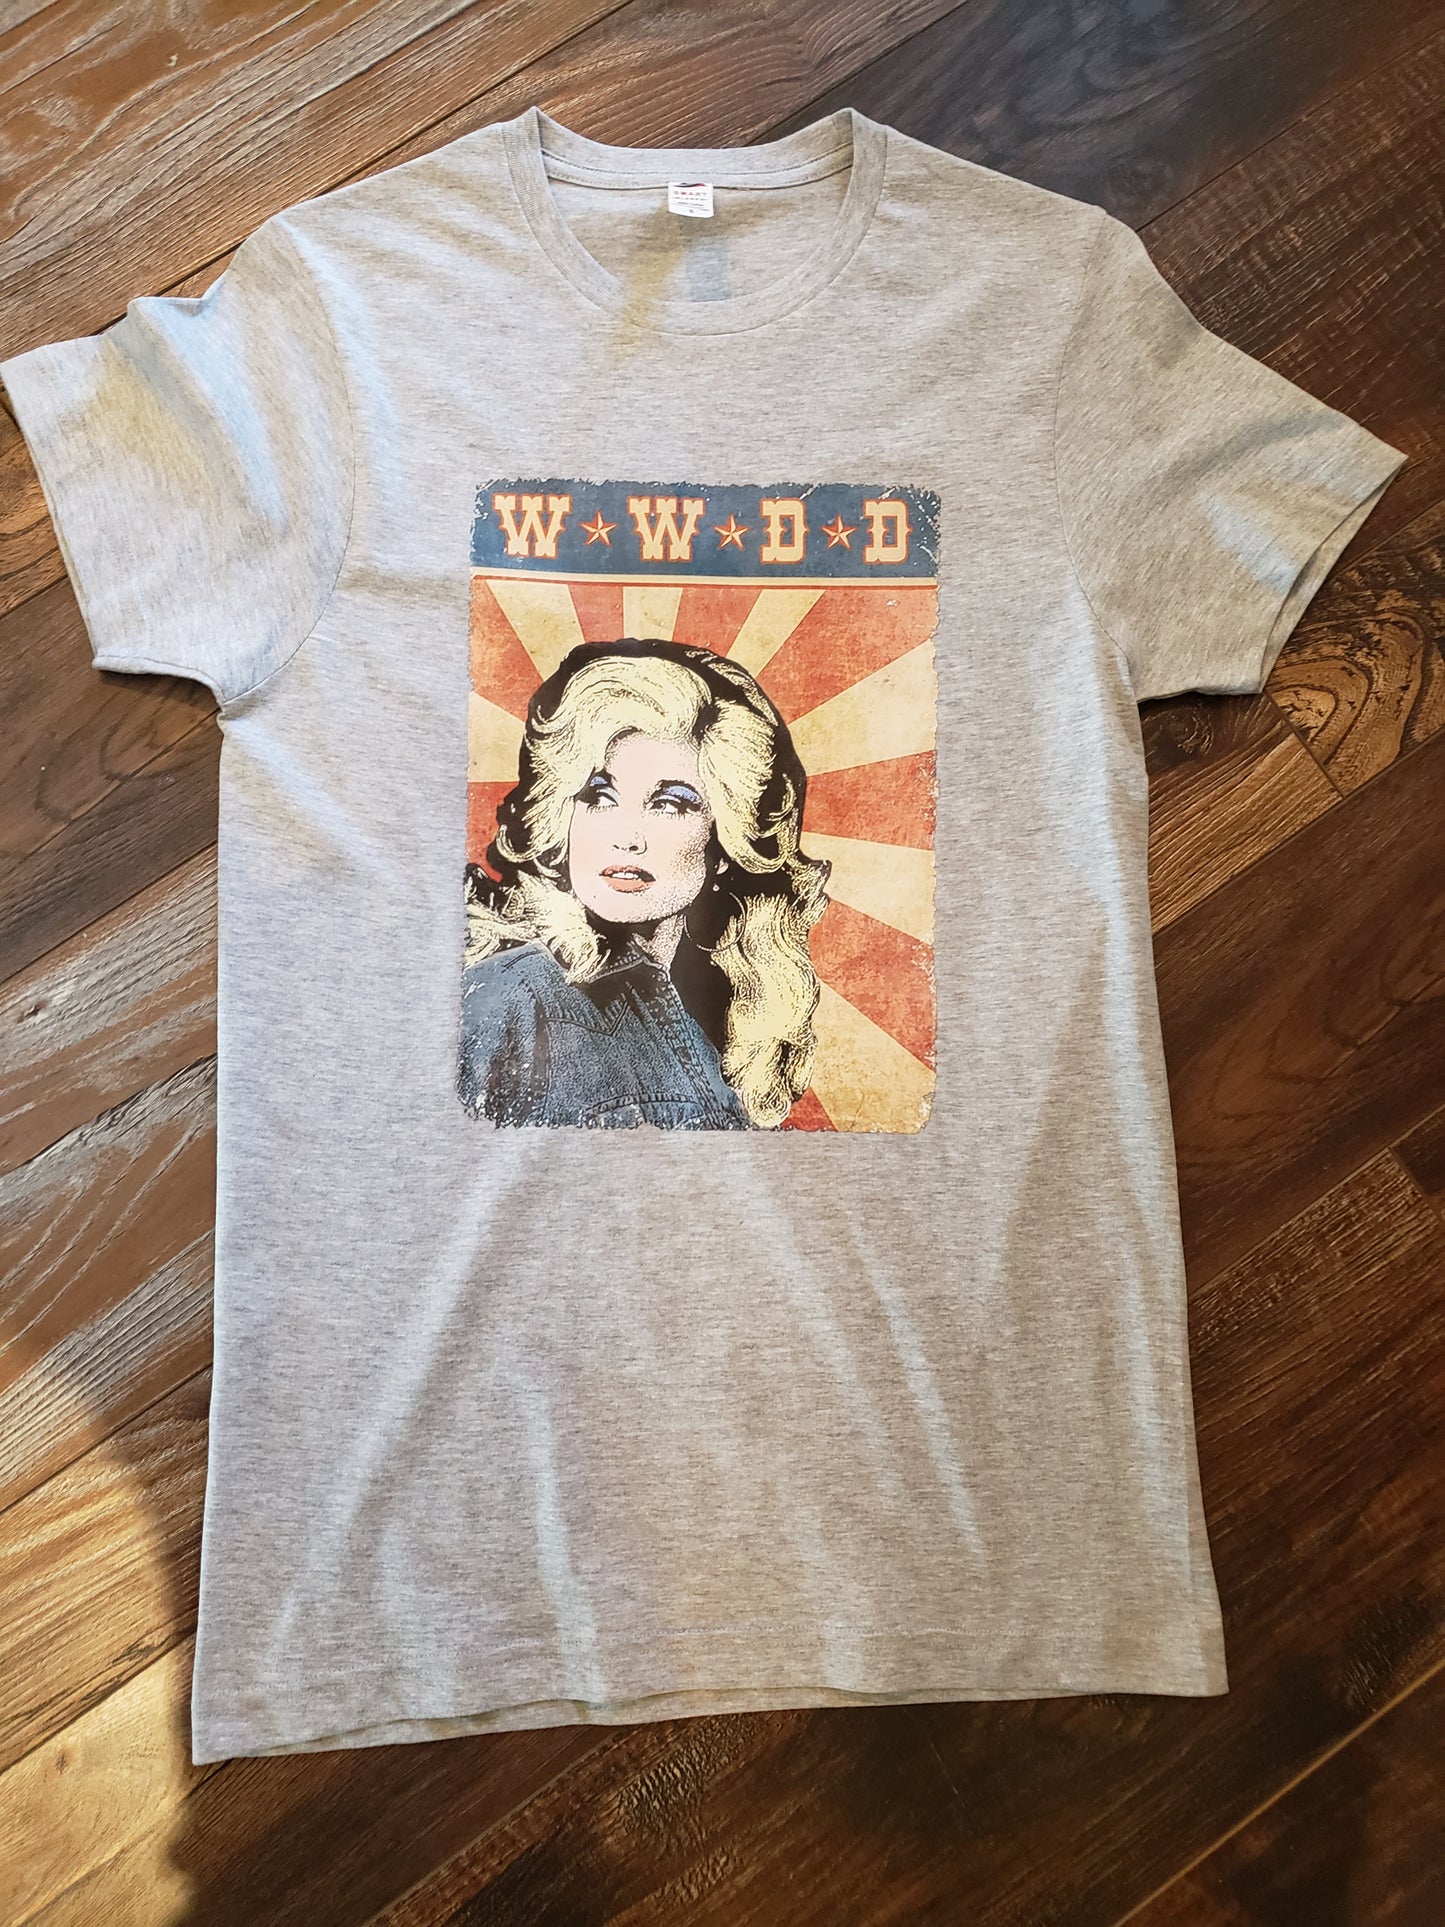 WWDD Shirt